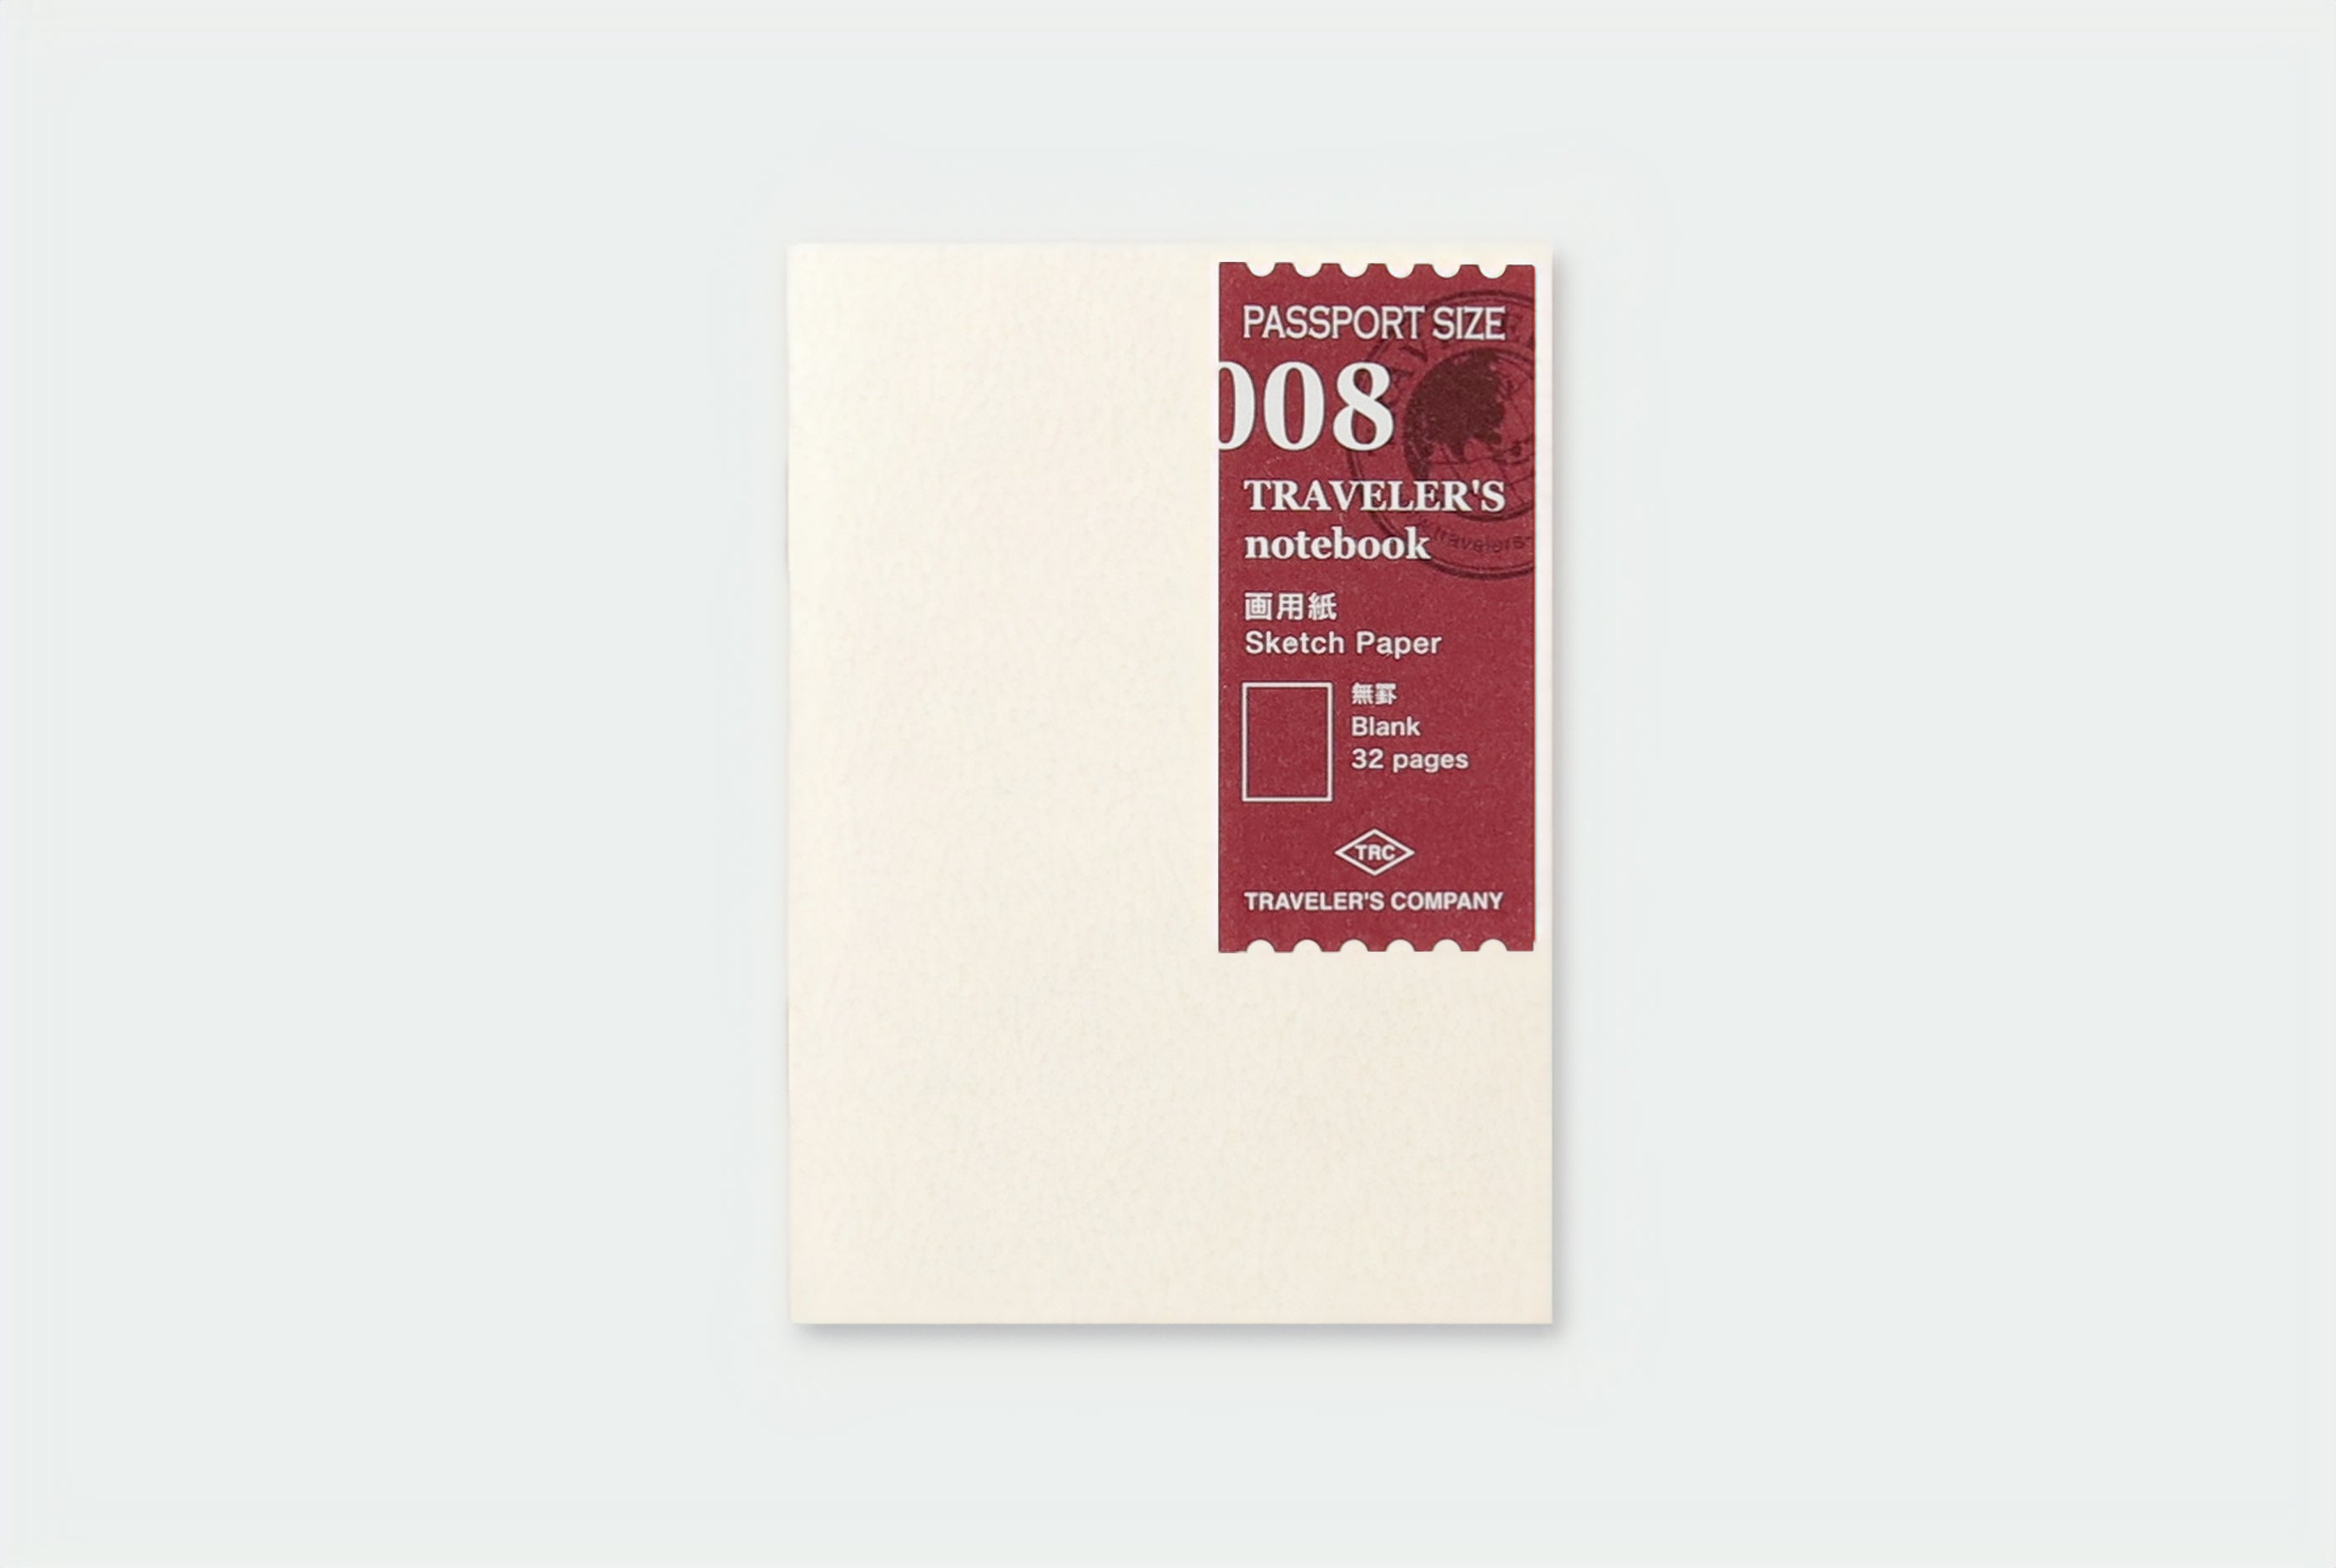 TRAVELER'S notebook Passport Size - 008. Sketch Paper Refill